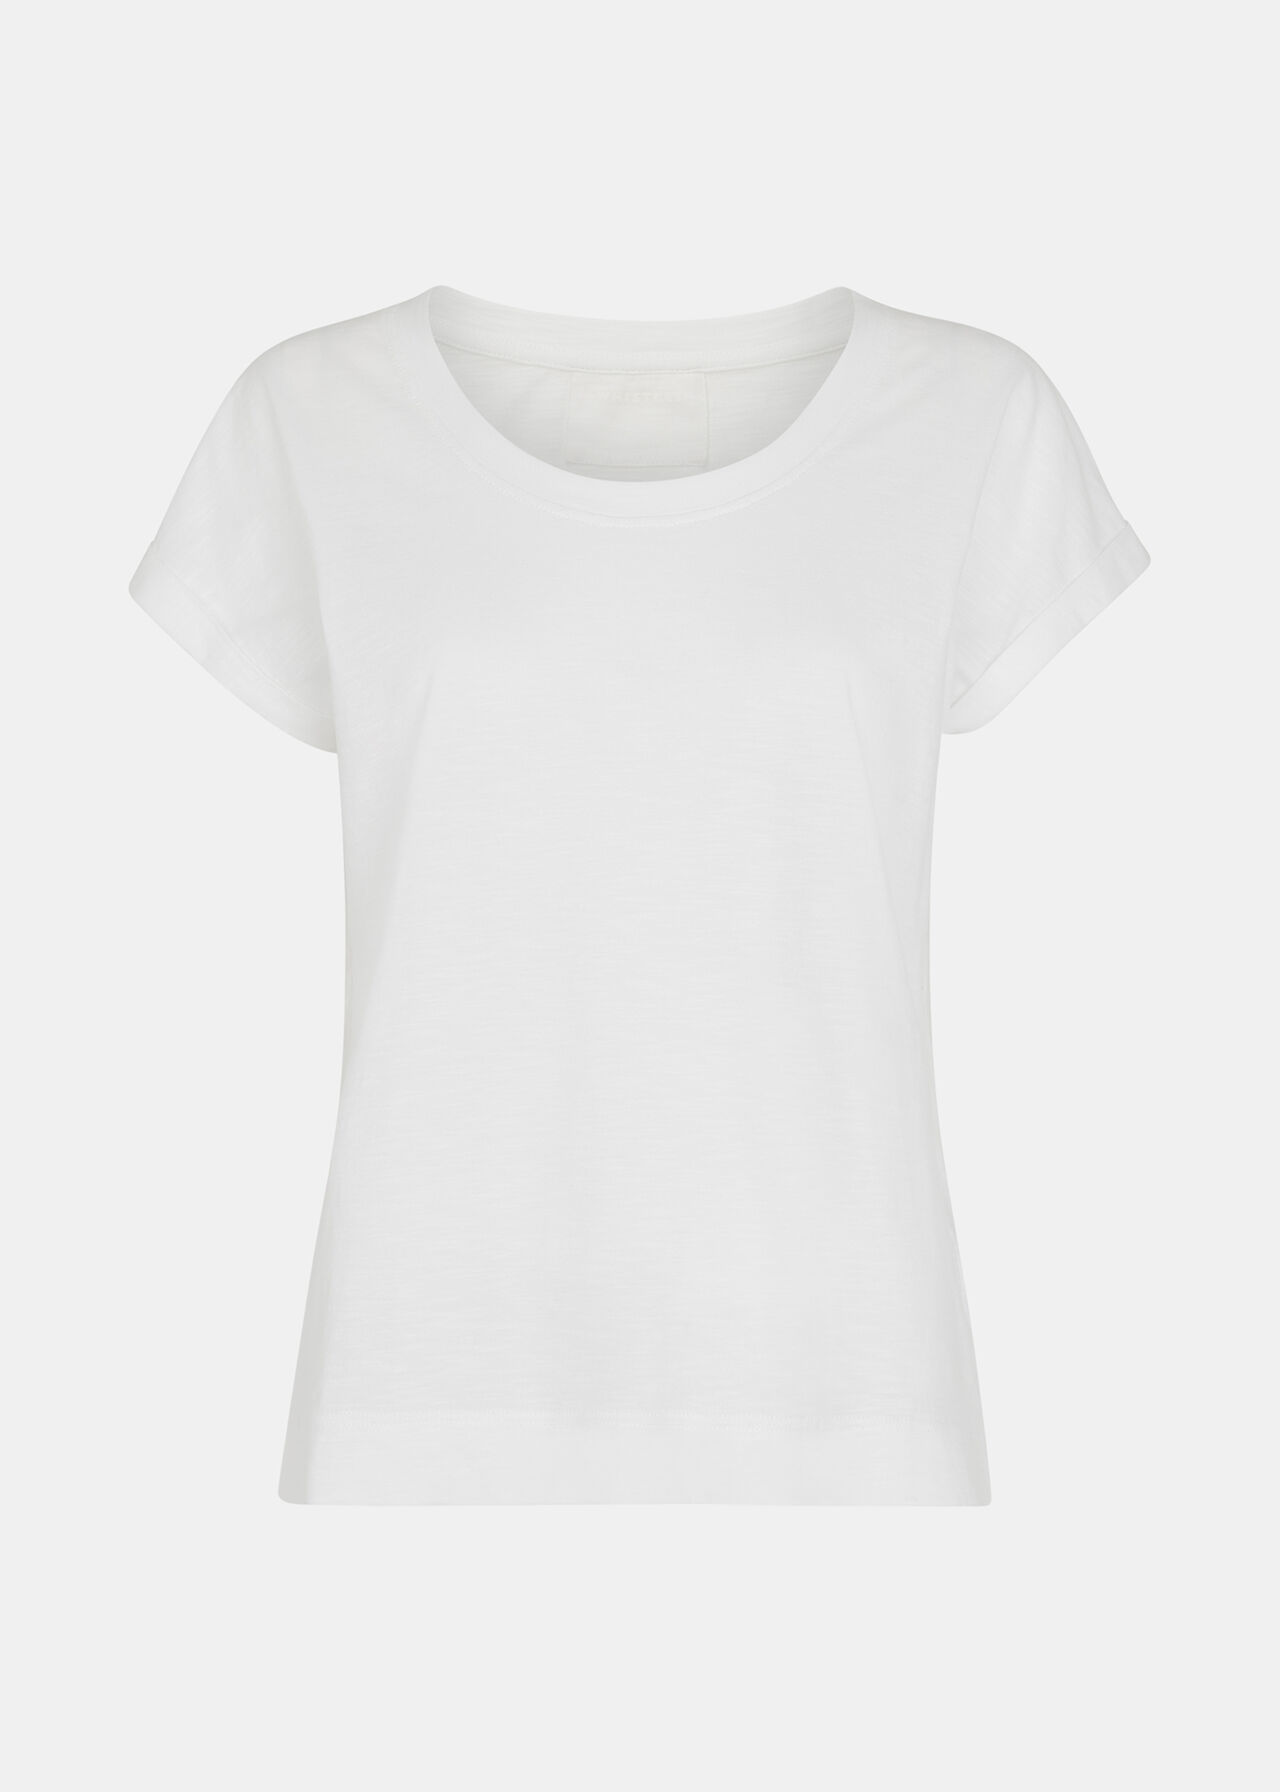 Wilma Scoop Neck T-Shirt